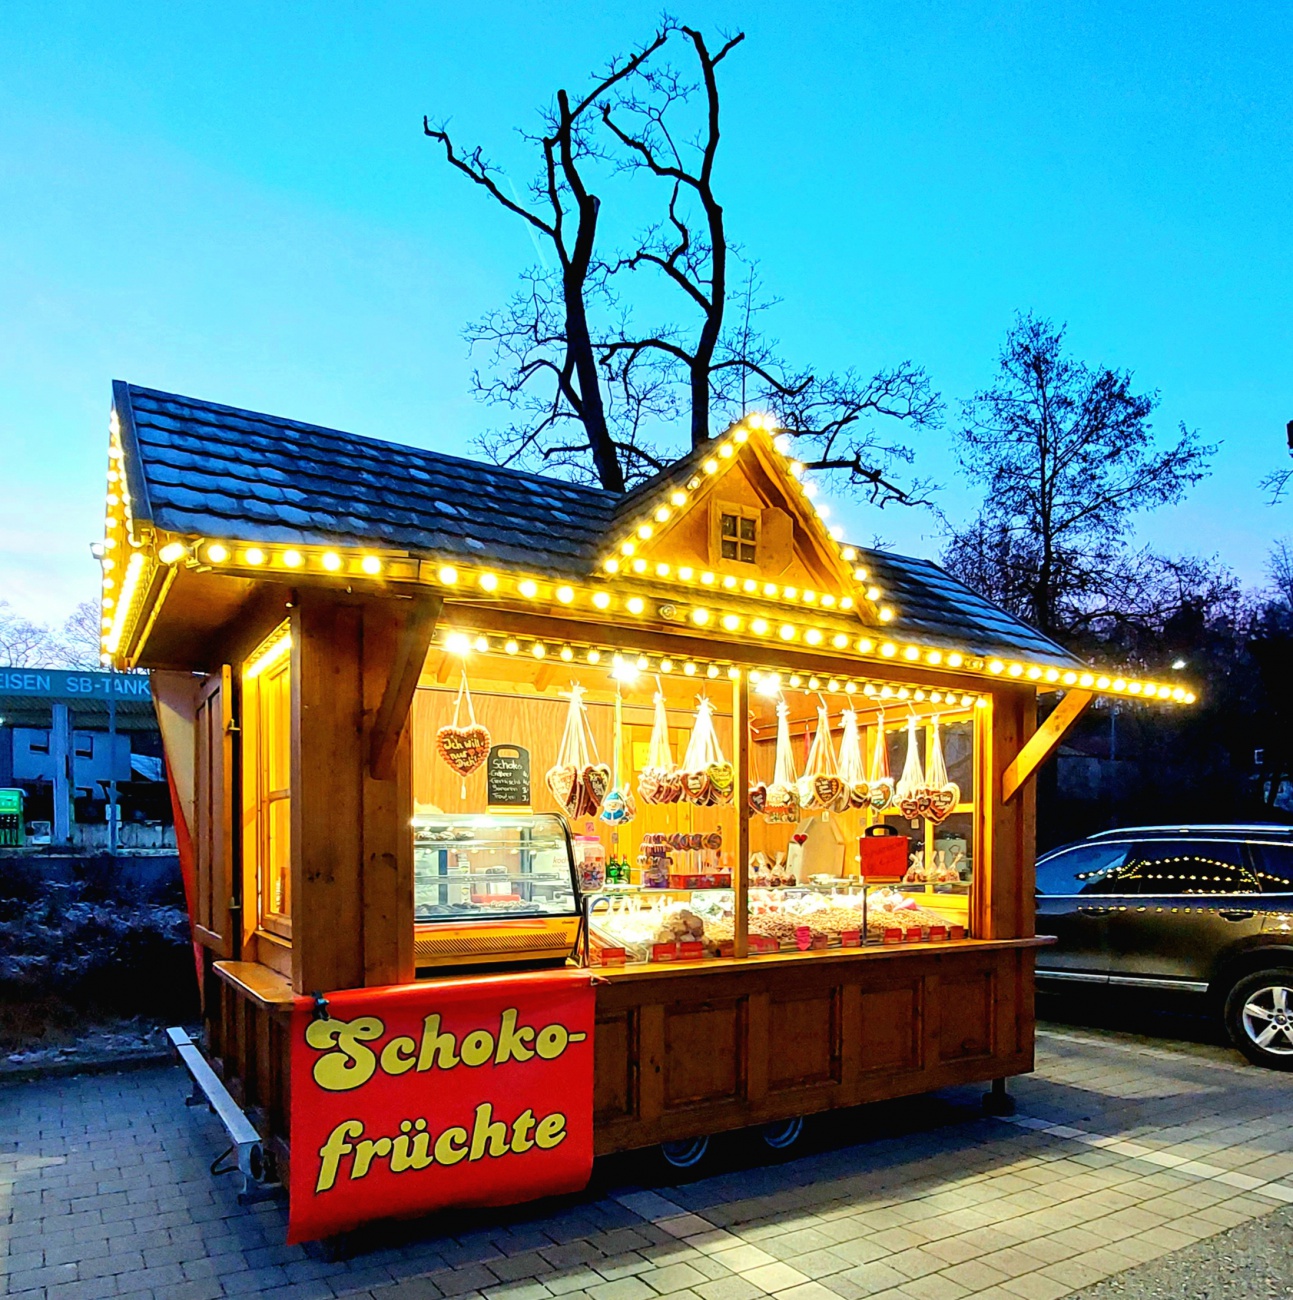 Foto: Martin Zehrer - Unser ganz persönlicher Mini-Zufalls-Weihnachts-Markt in Grafenwöhr :-)<br />
<br />
Makronerler gabs da... 